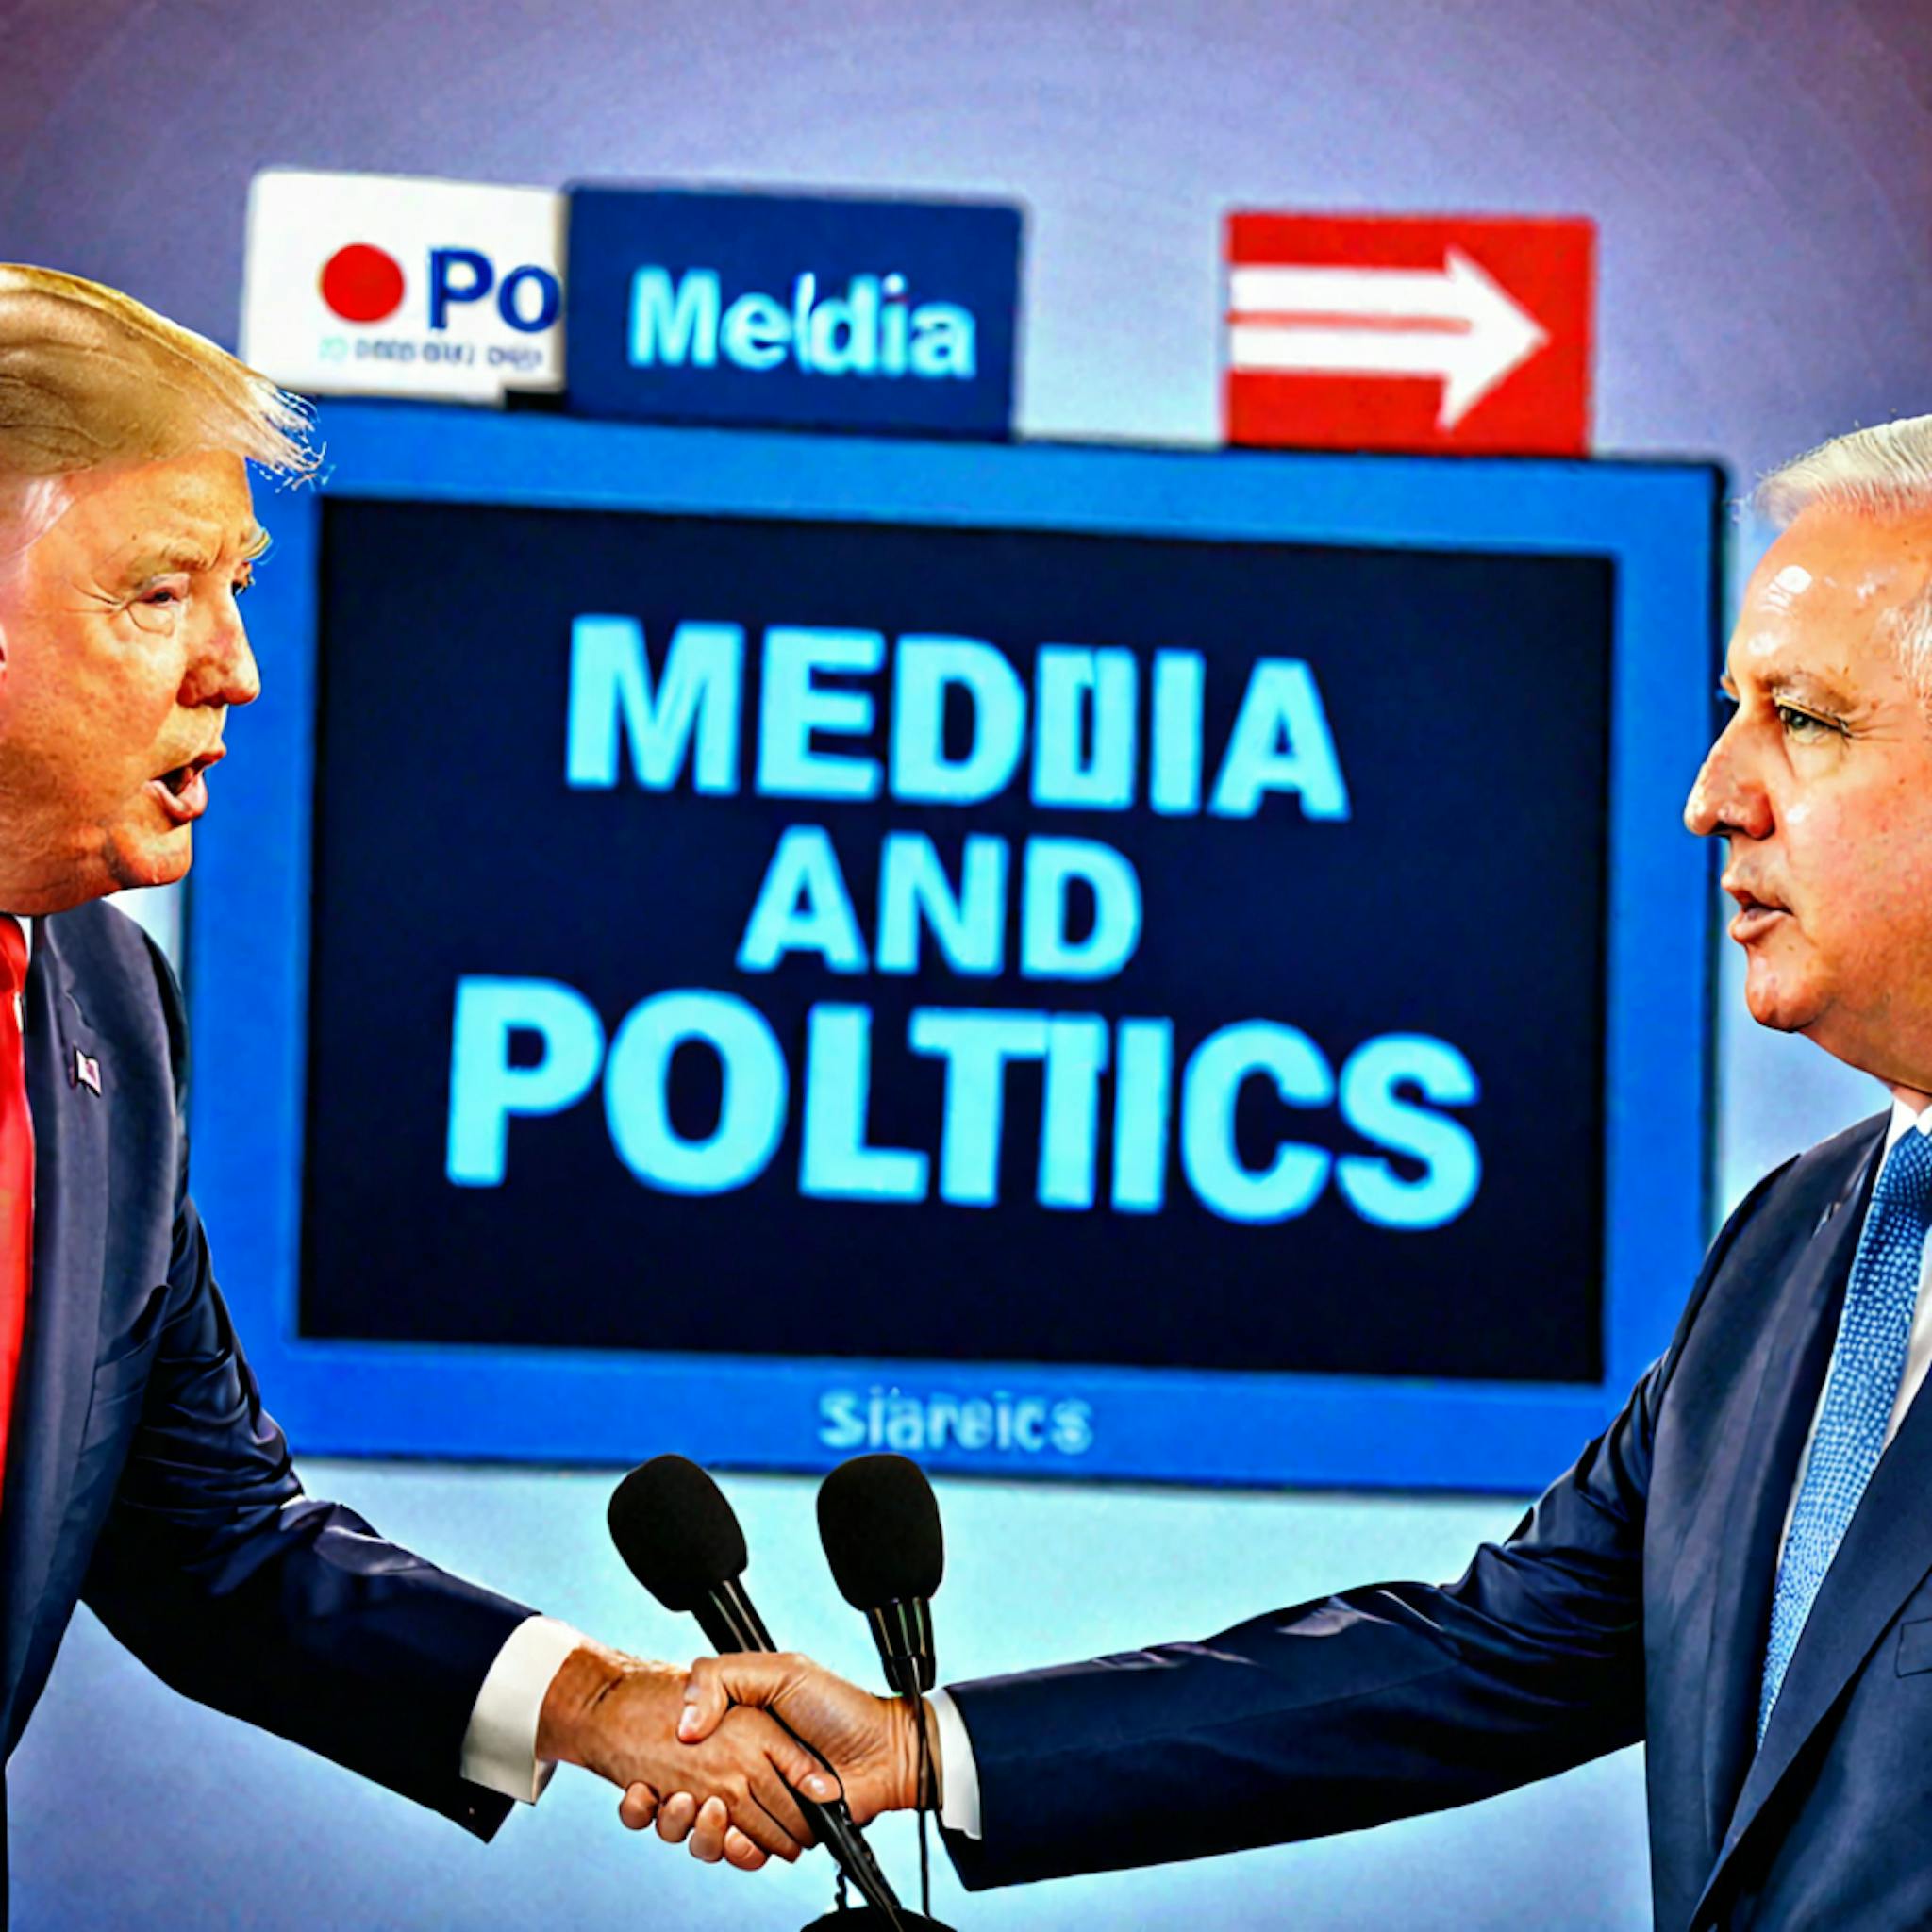 featured image - Clasificación multilingüe de posturas políticas generales de los medios: reconocimientos y referencias